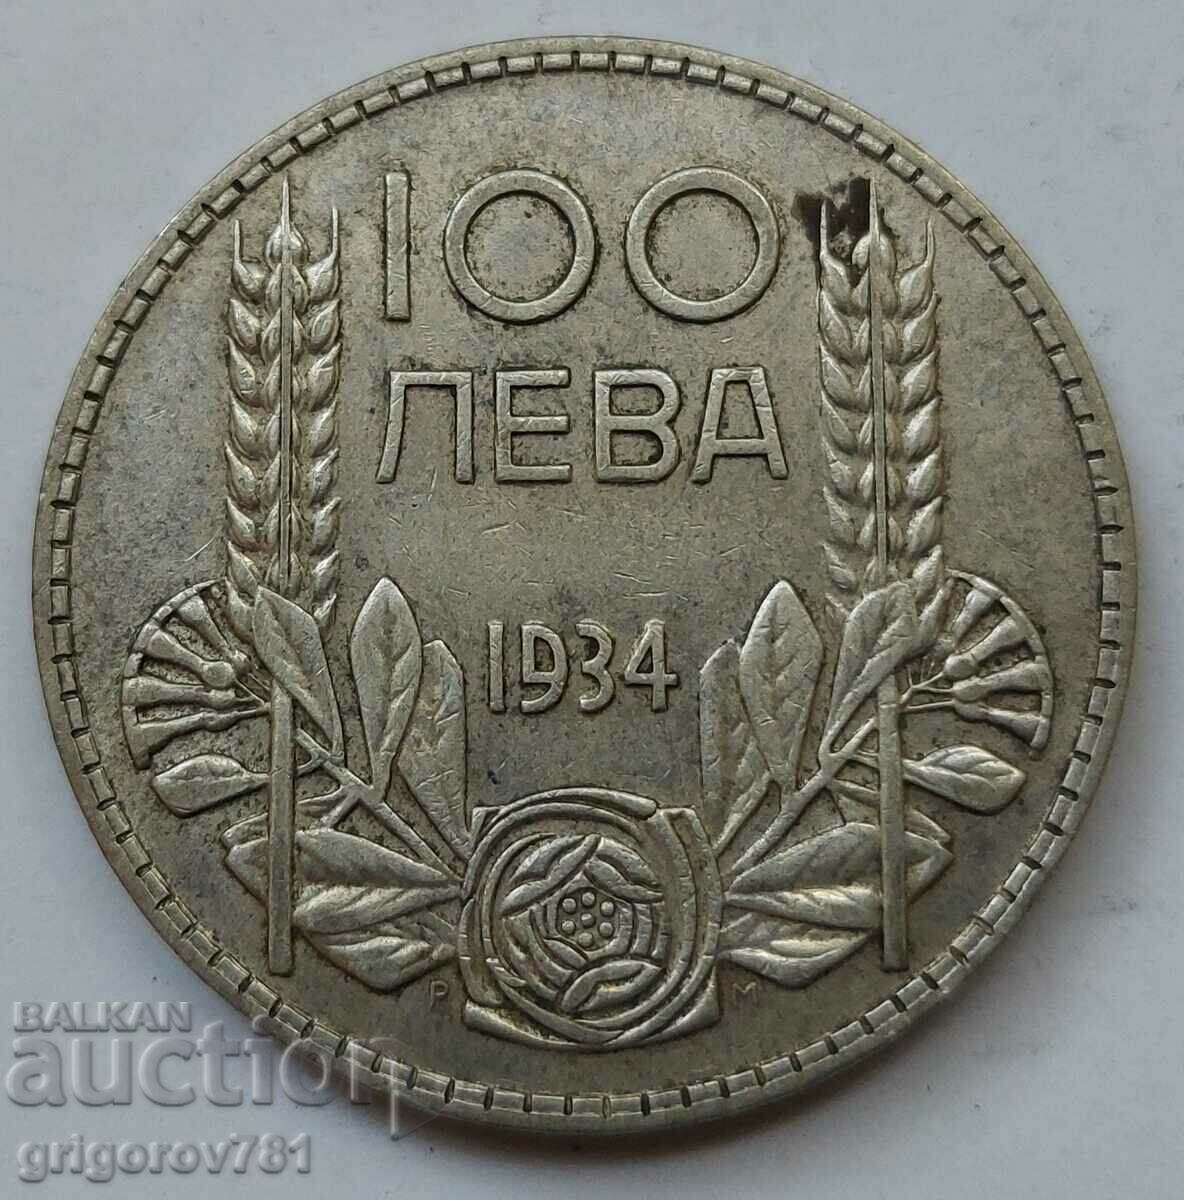 100 leva silver Bulgaria 1934 - silver coin #107